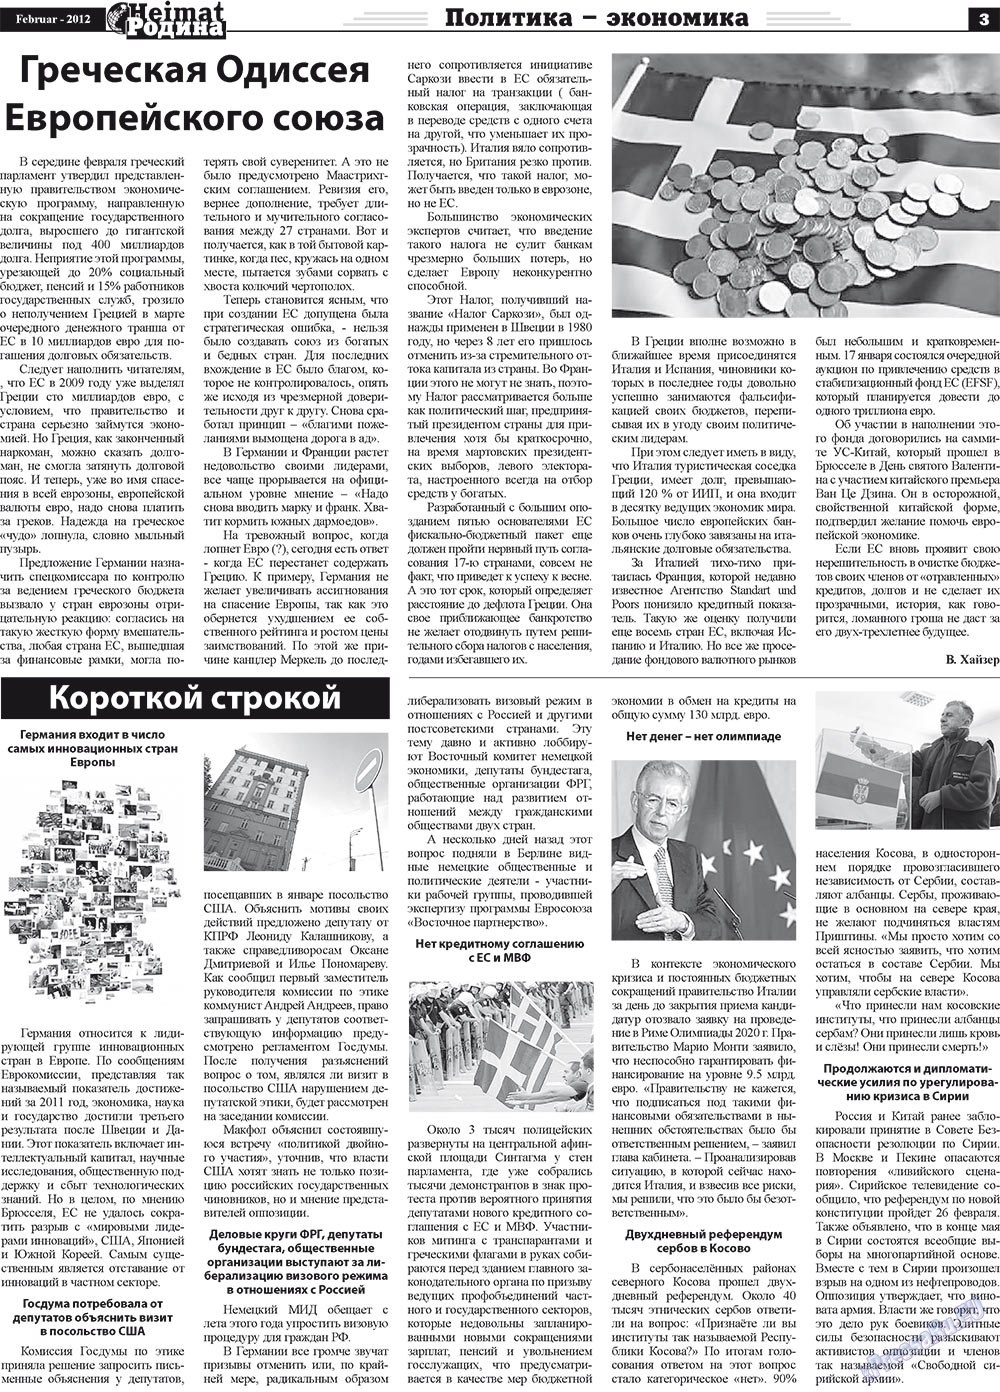 Heimat-Родина (Zeitung). 2012 Jahr, Ausgabe 2, Seite 3